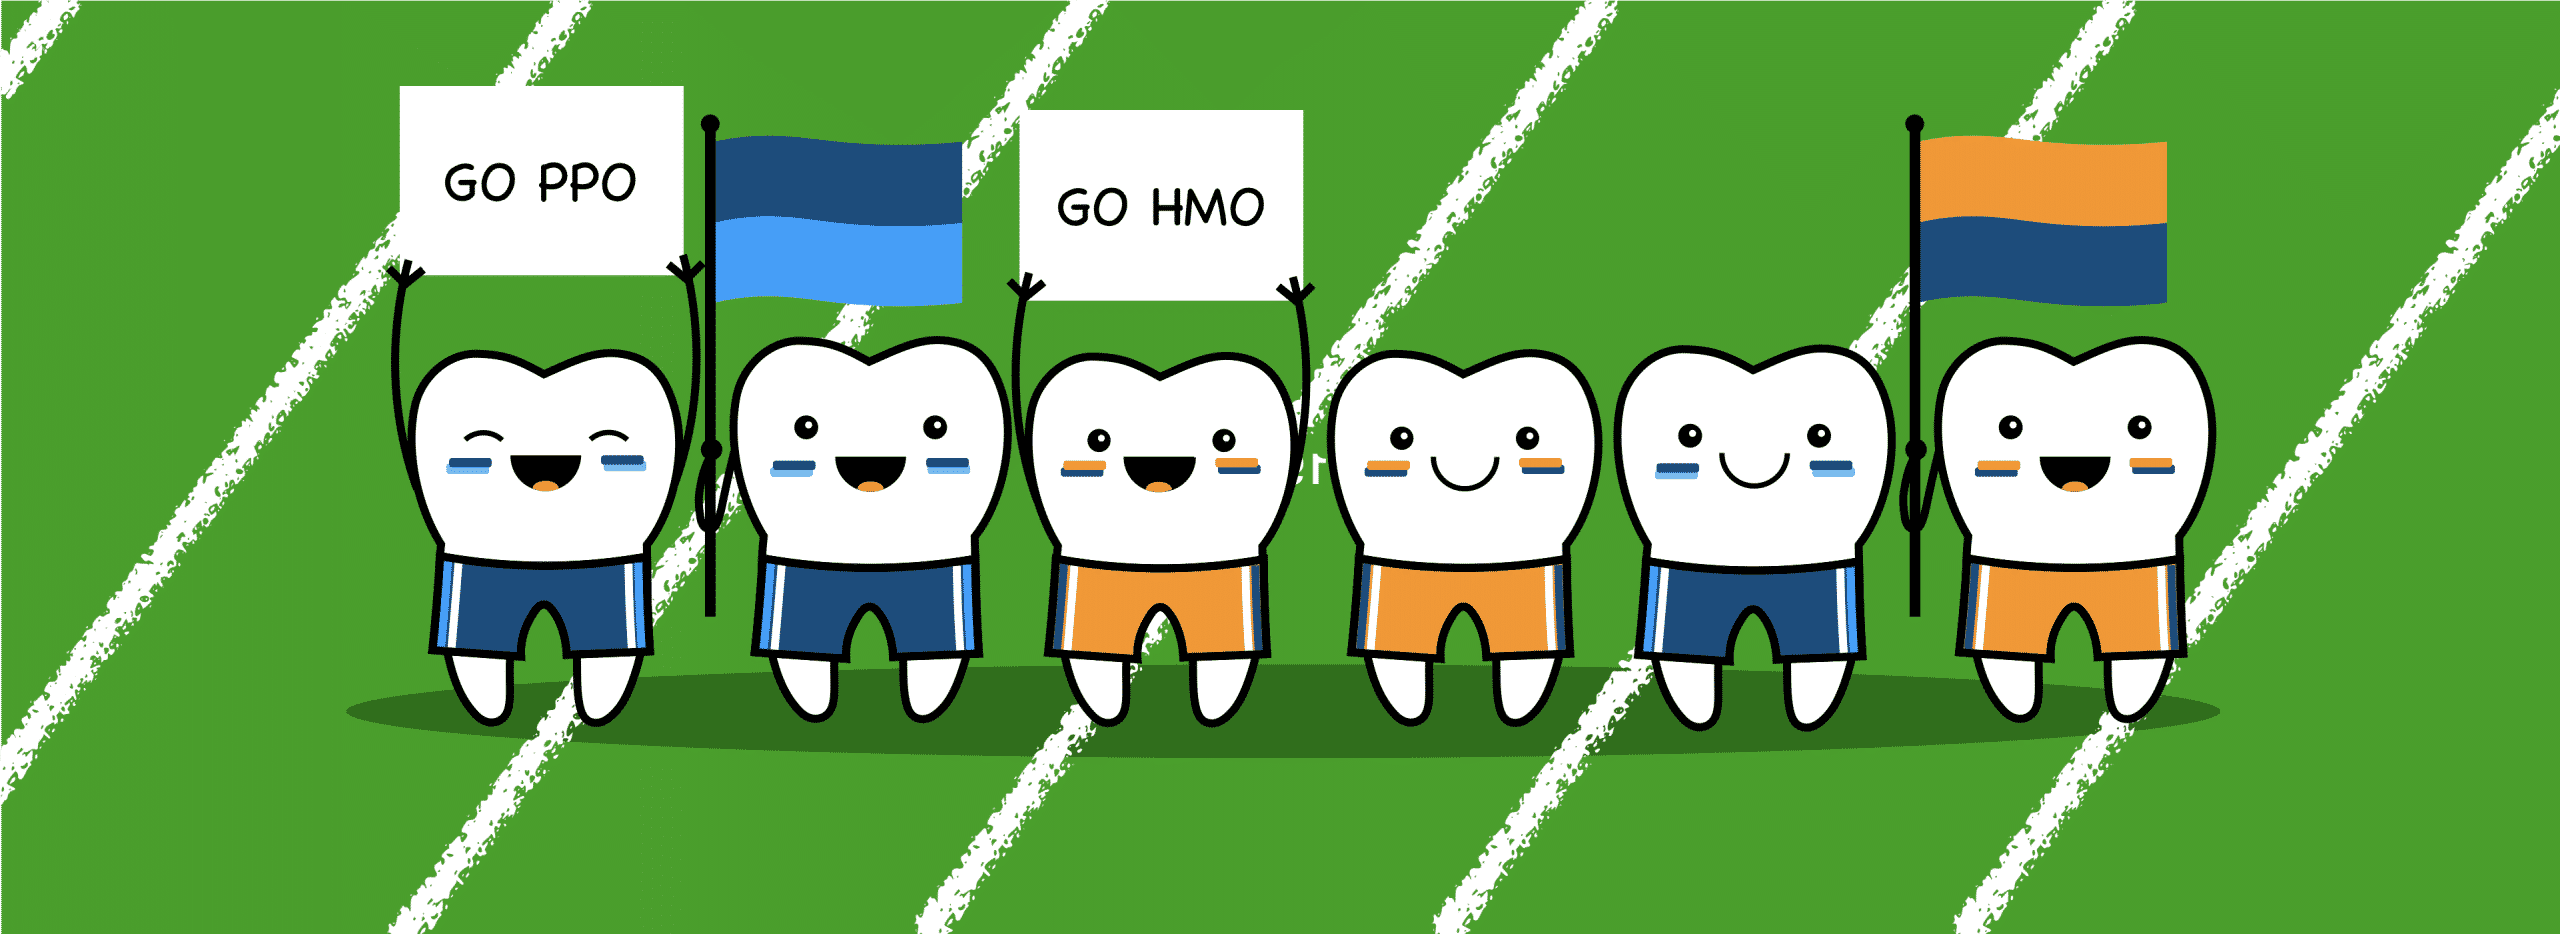 hmo vs ppo dental